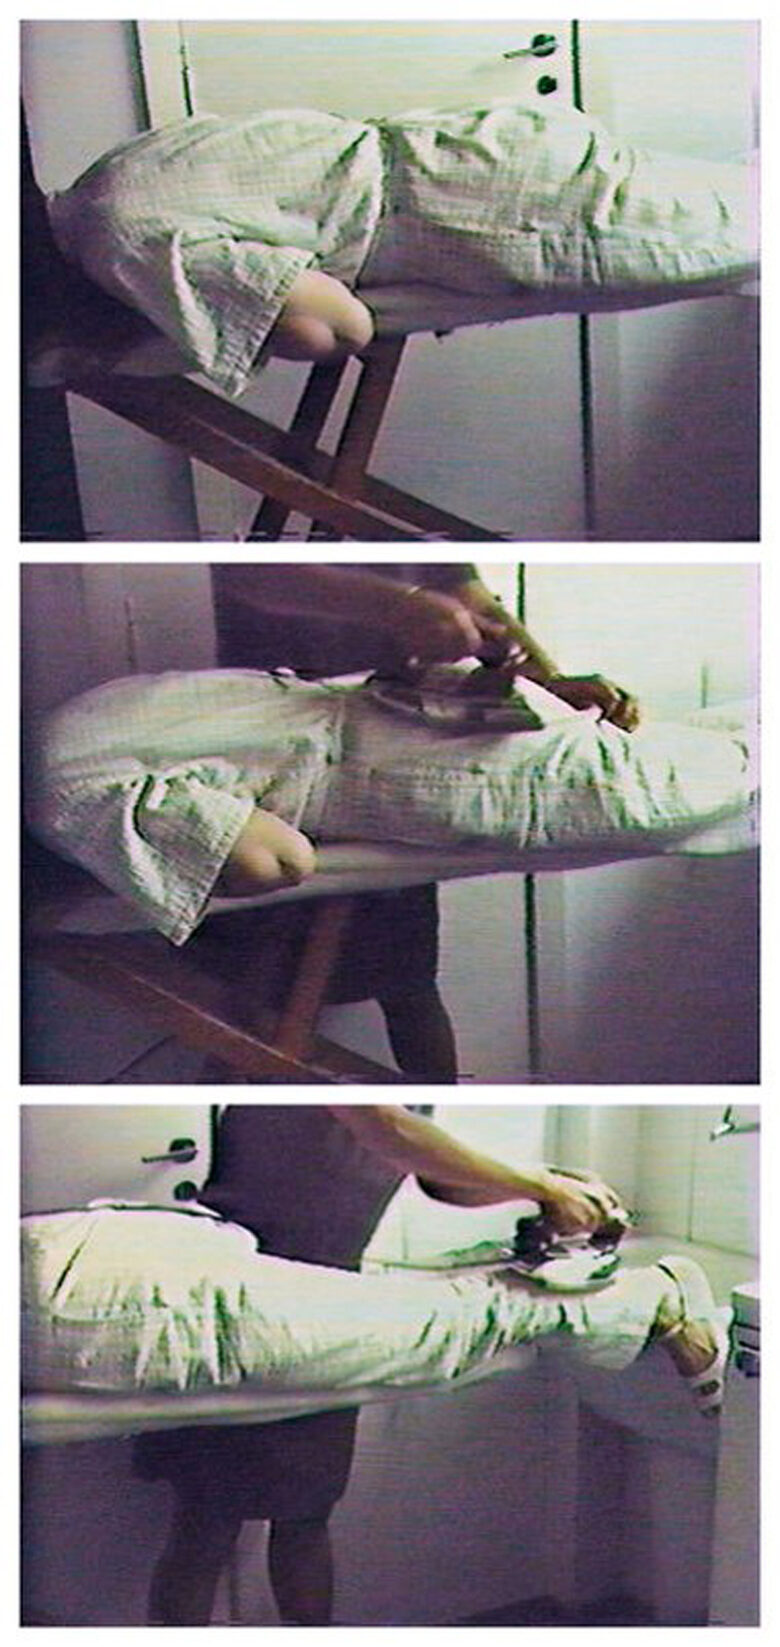 Letícia Parente, Tarefa 1 (Chore 1), 1982 │ Video, farbig, 1:56 min., Courtesy of Letícia Parente und Galeria Jaqueline Martins